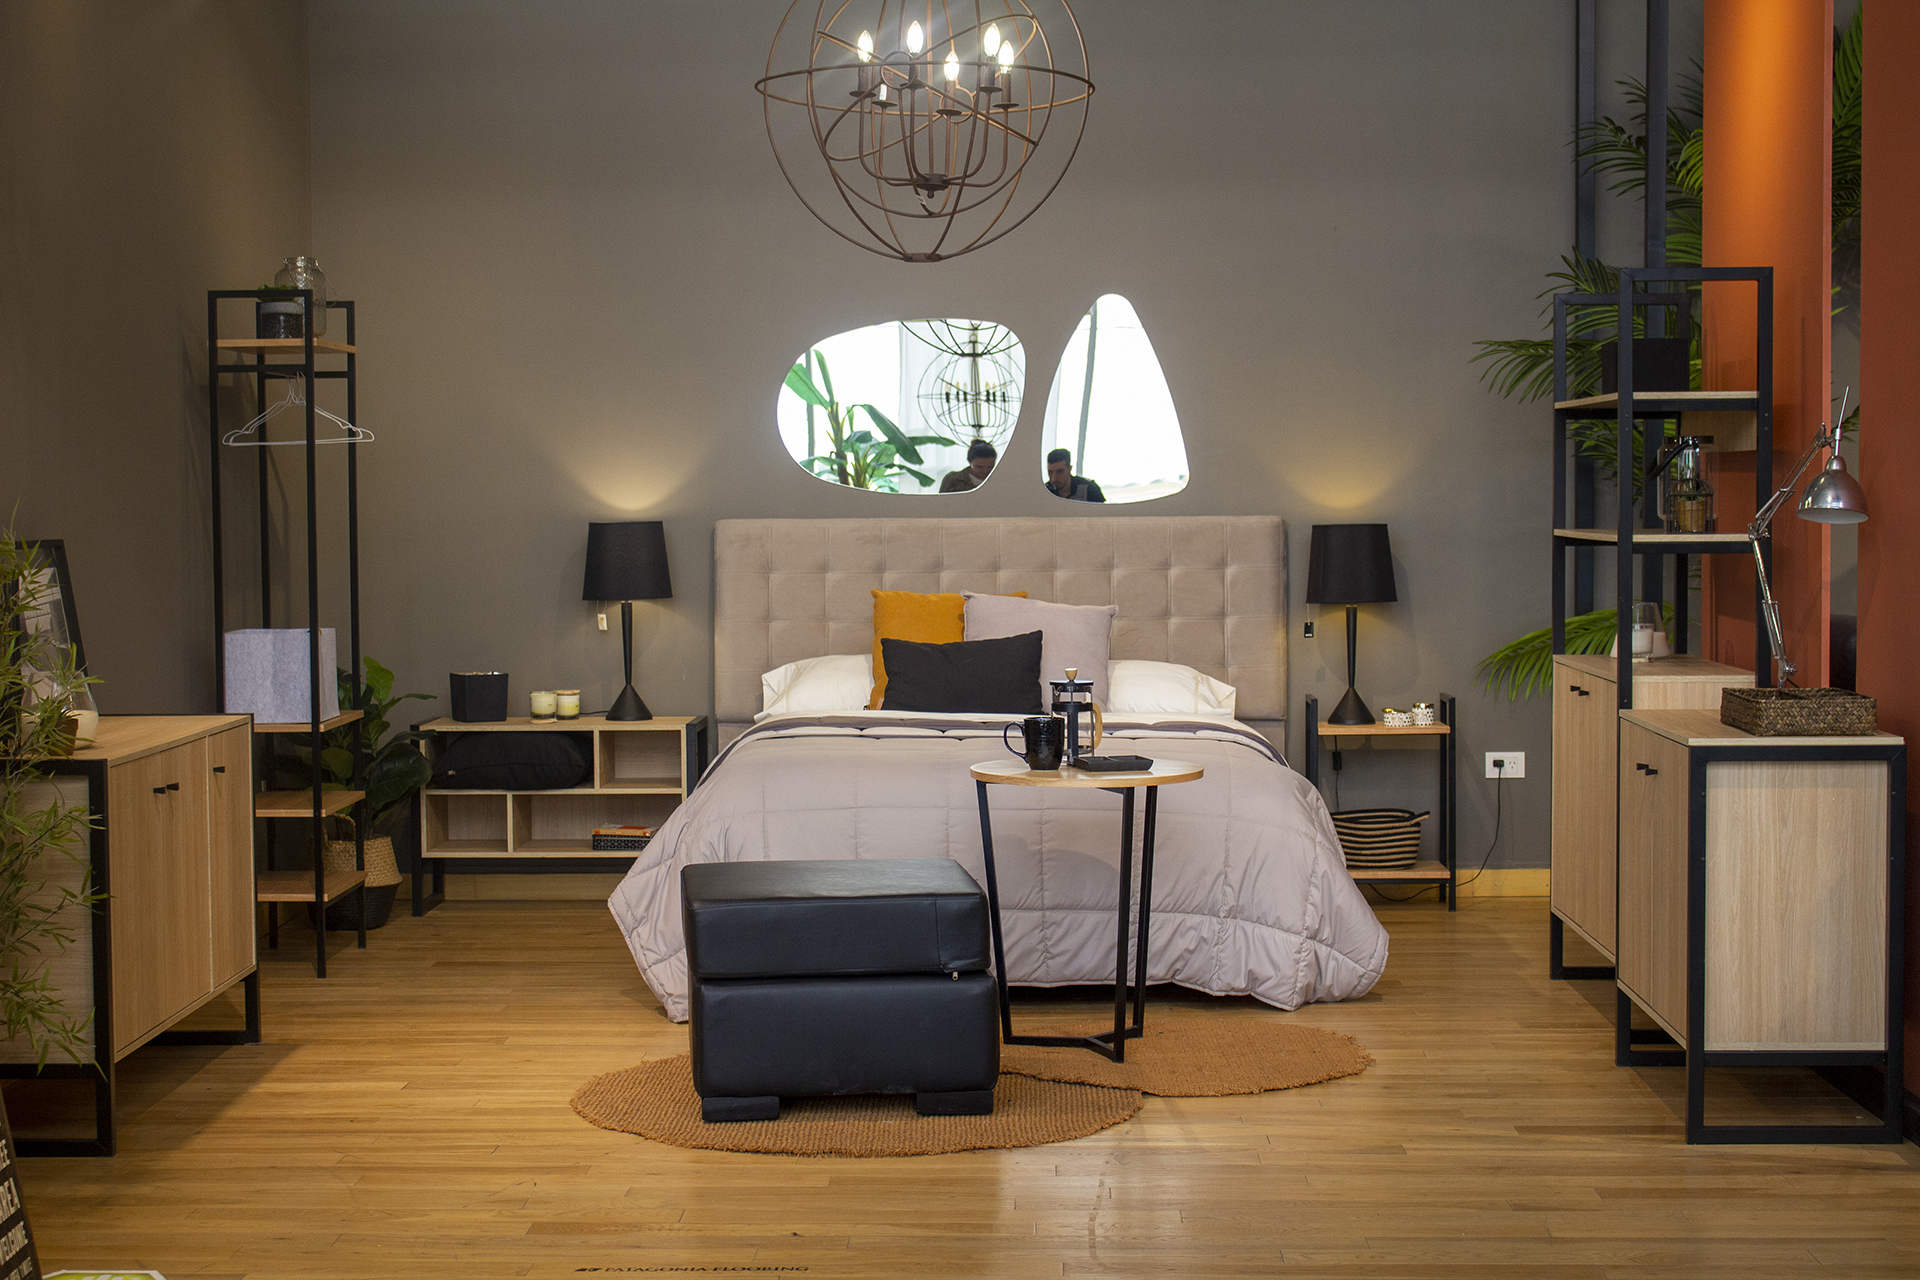 En dormitorios también se pueden aplicar muebles que remitirán al estilo industrial (Foto Gentileza: Tienda FC FC Hogar & Deco)